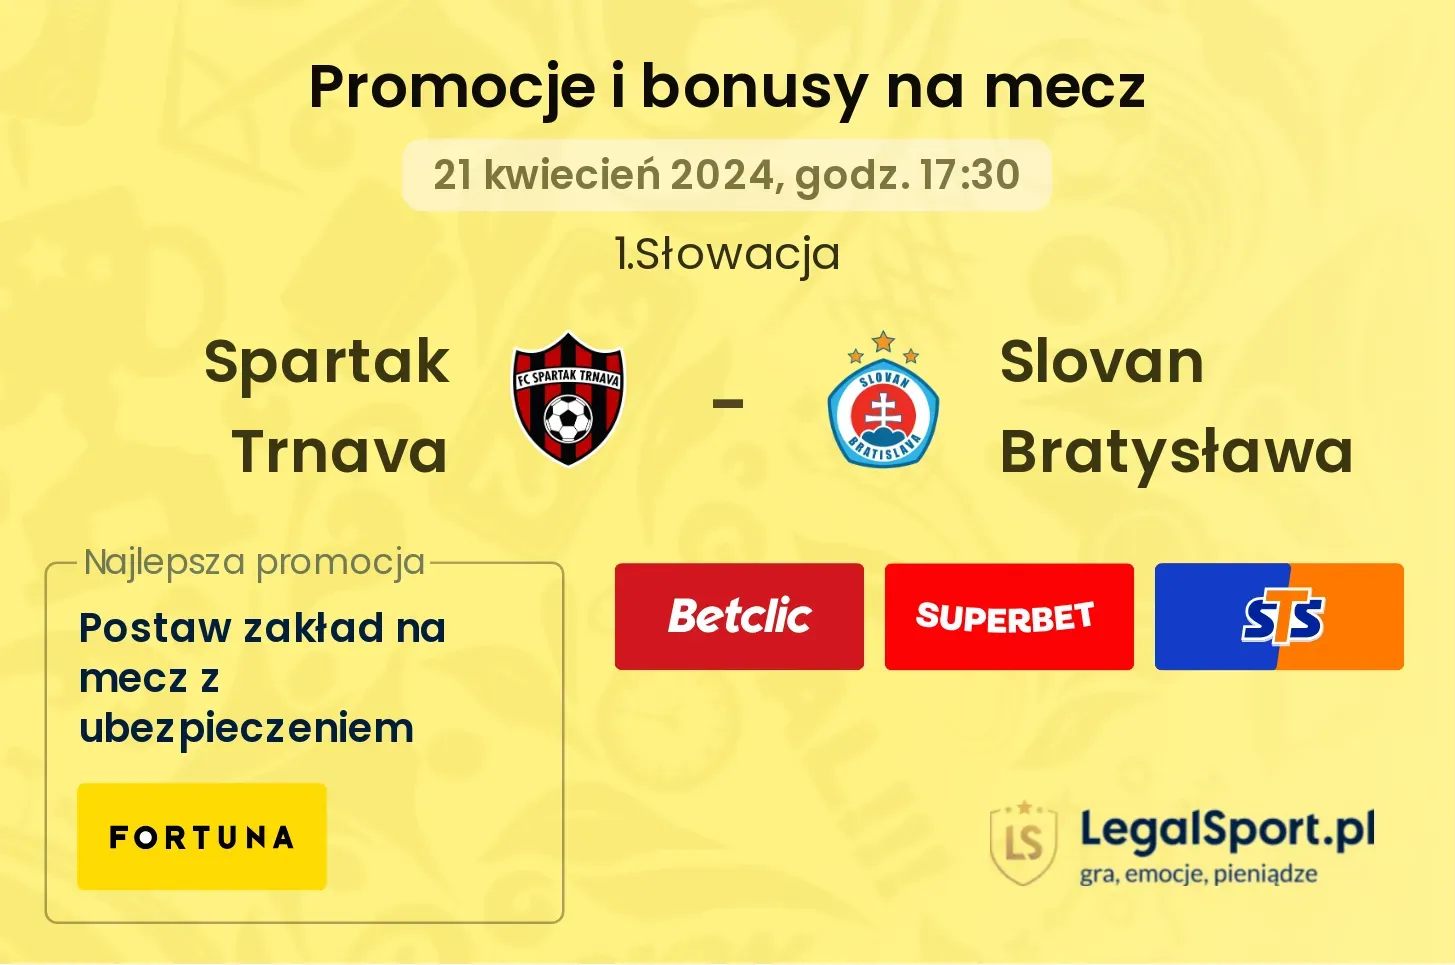 Spartak Trnava - Slovan Bratysława promocje bonusy na mecz